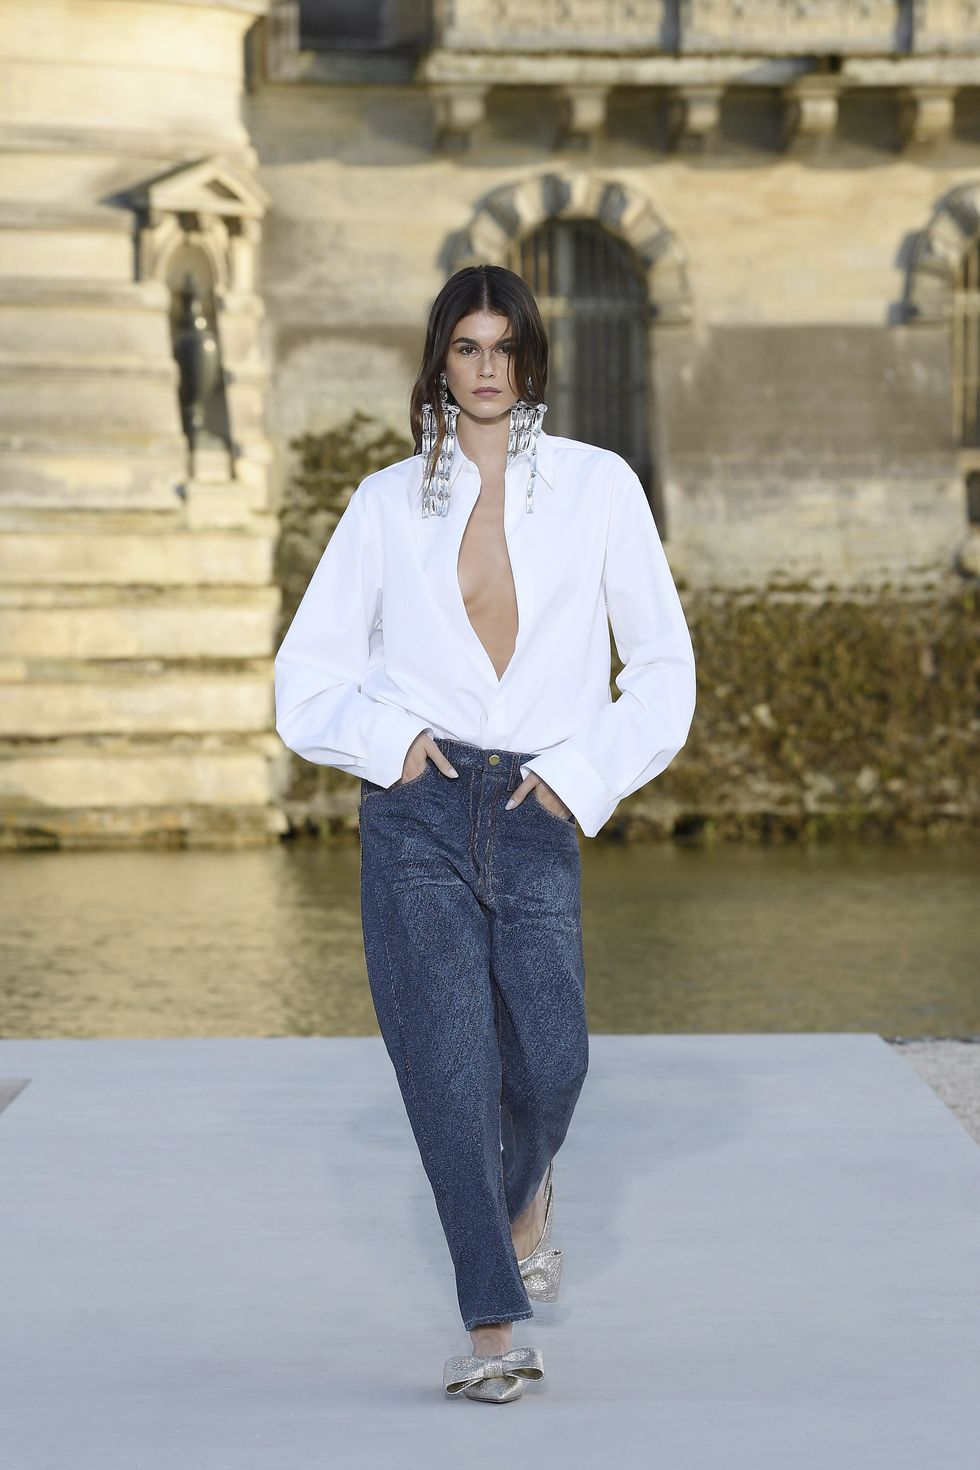 haute couture 2023, la settimana dell'alta moda a parigi ha rimesso in circolo lo street style, ecco il recap dei look e outfit di tendenza fuori e durante le sfilate